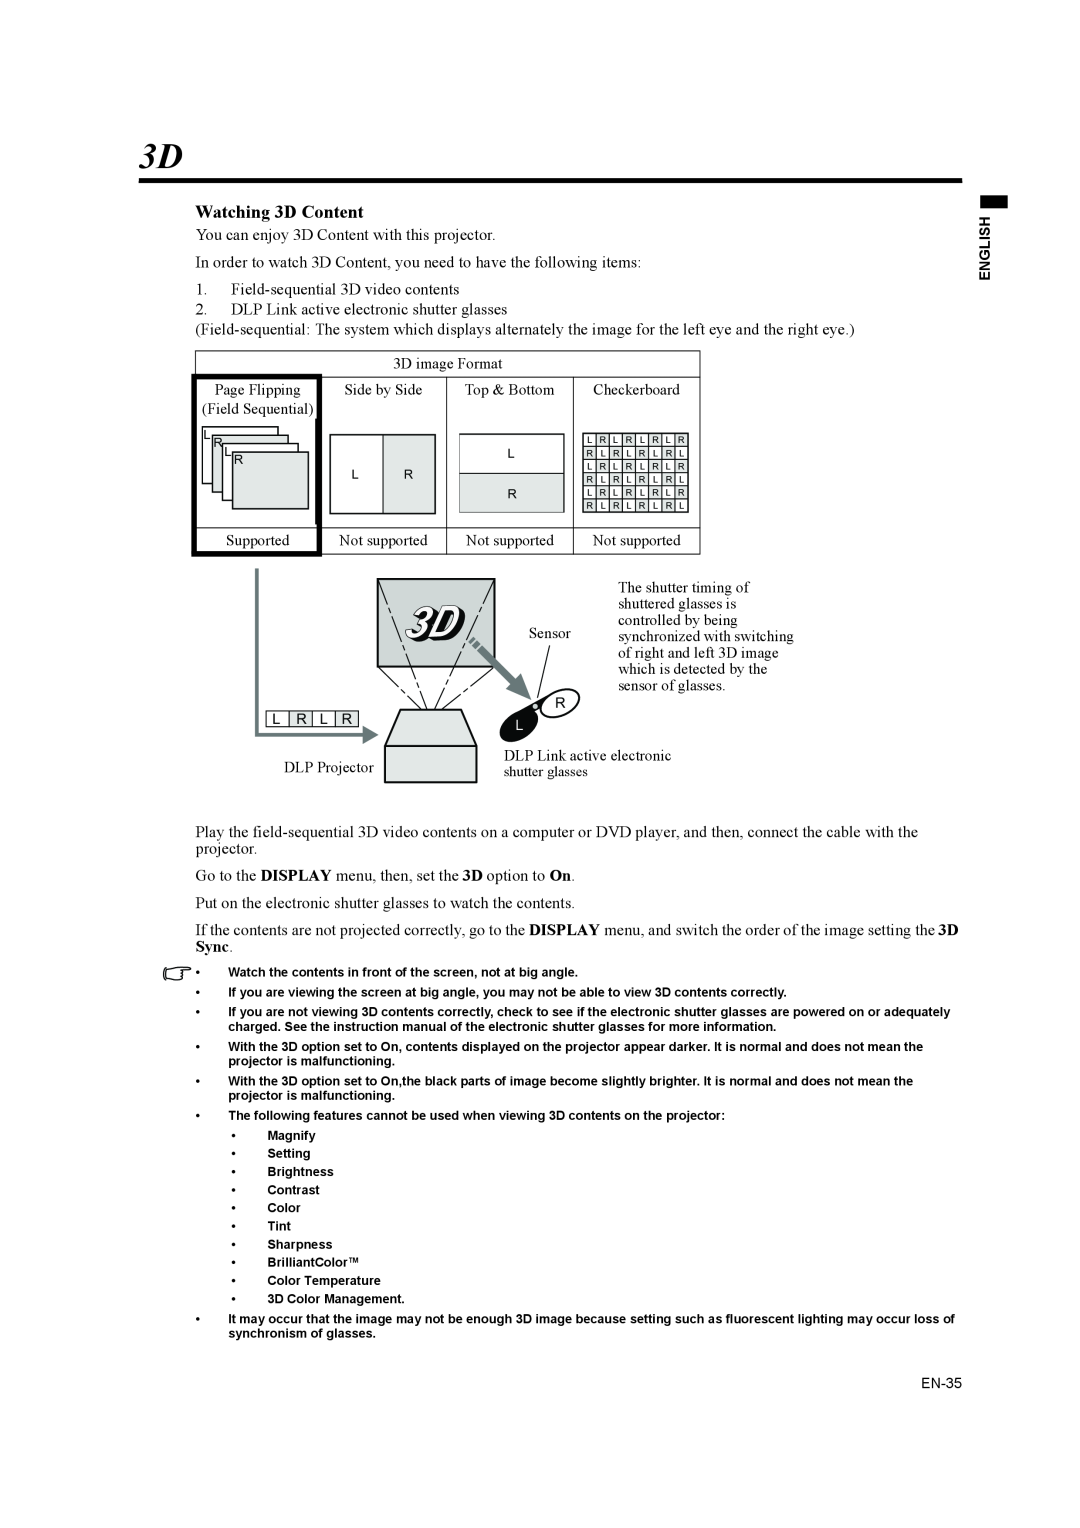 Mitsubishi Electronics EW270U user manual Watching 3D Content 